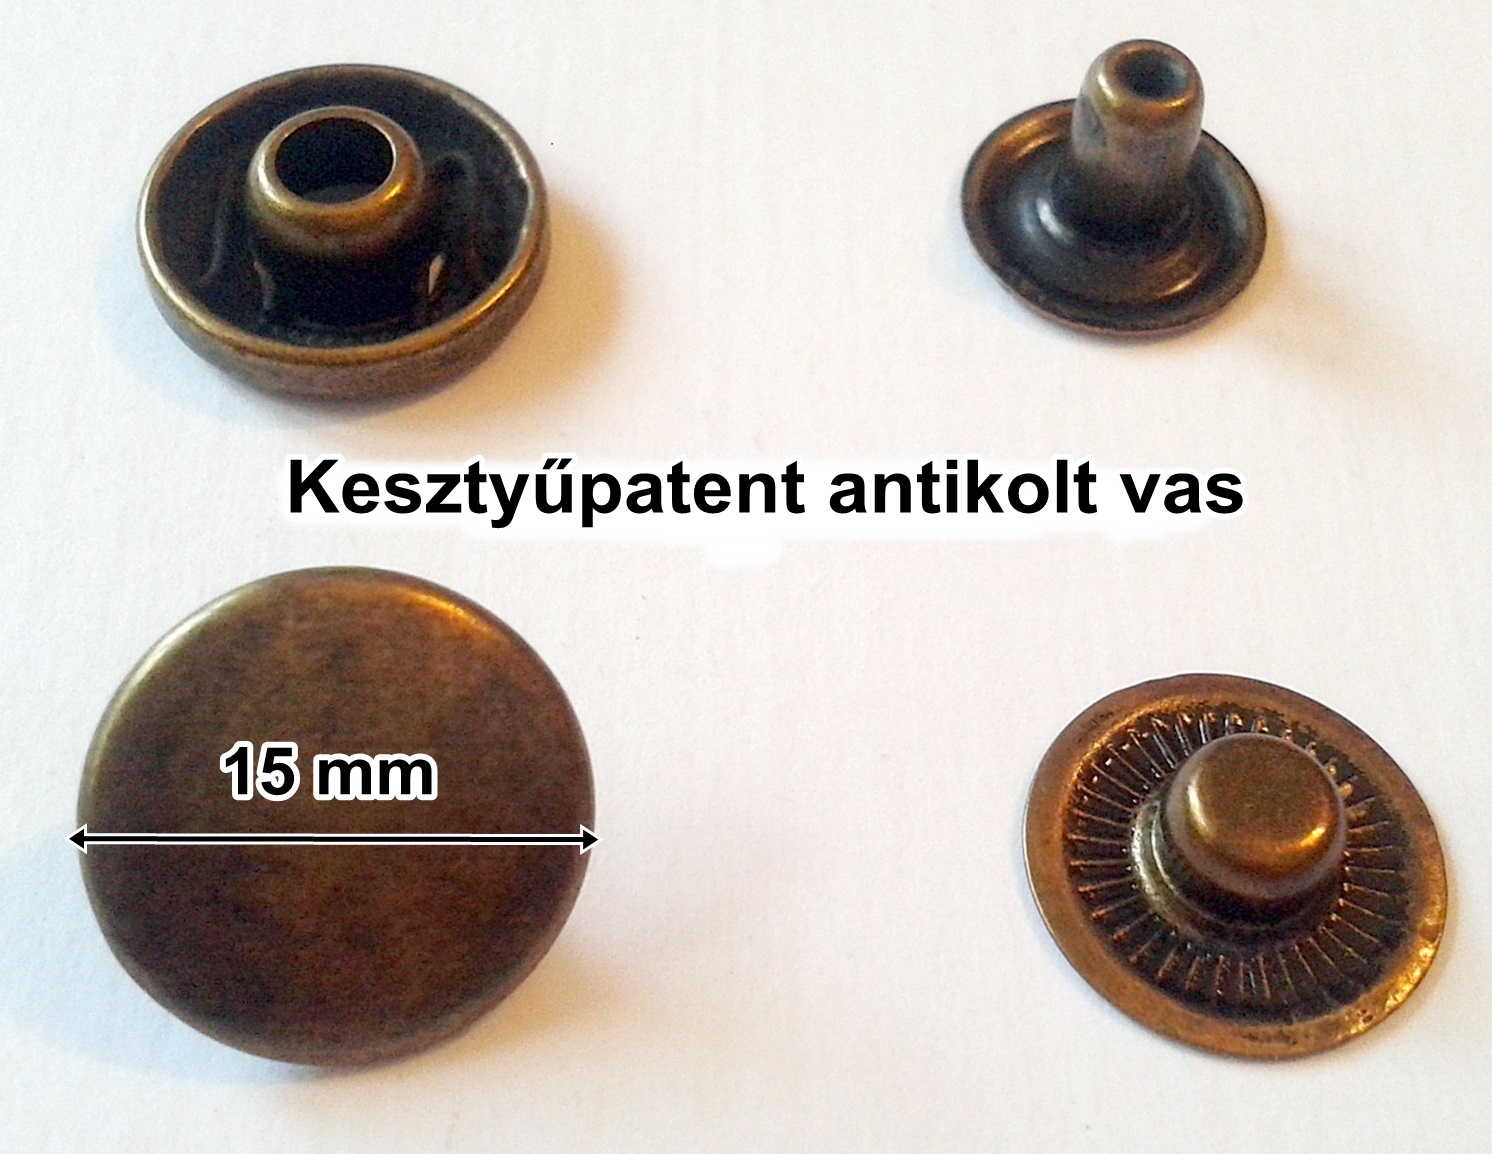 Kesztyűpatent 15 mm vas anyagú, antikolt patent sima kerek, 22 Ft/szett. 